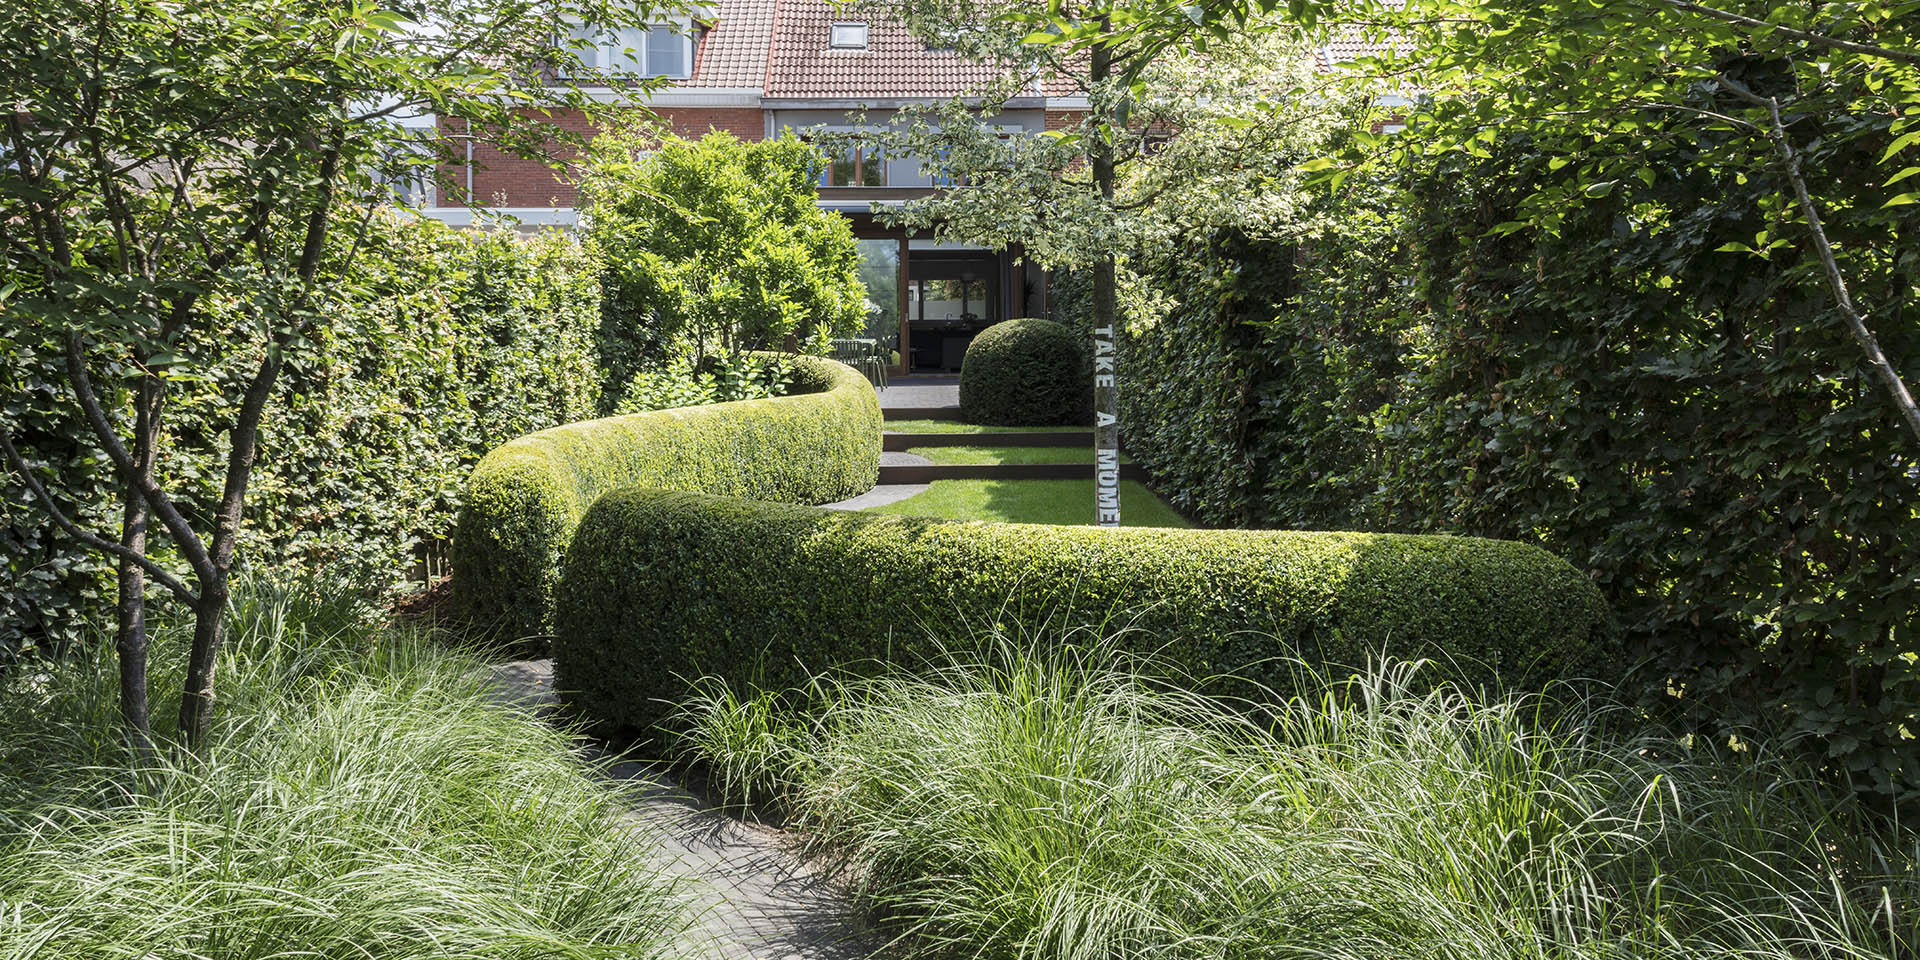 Duo Verde garden architects